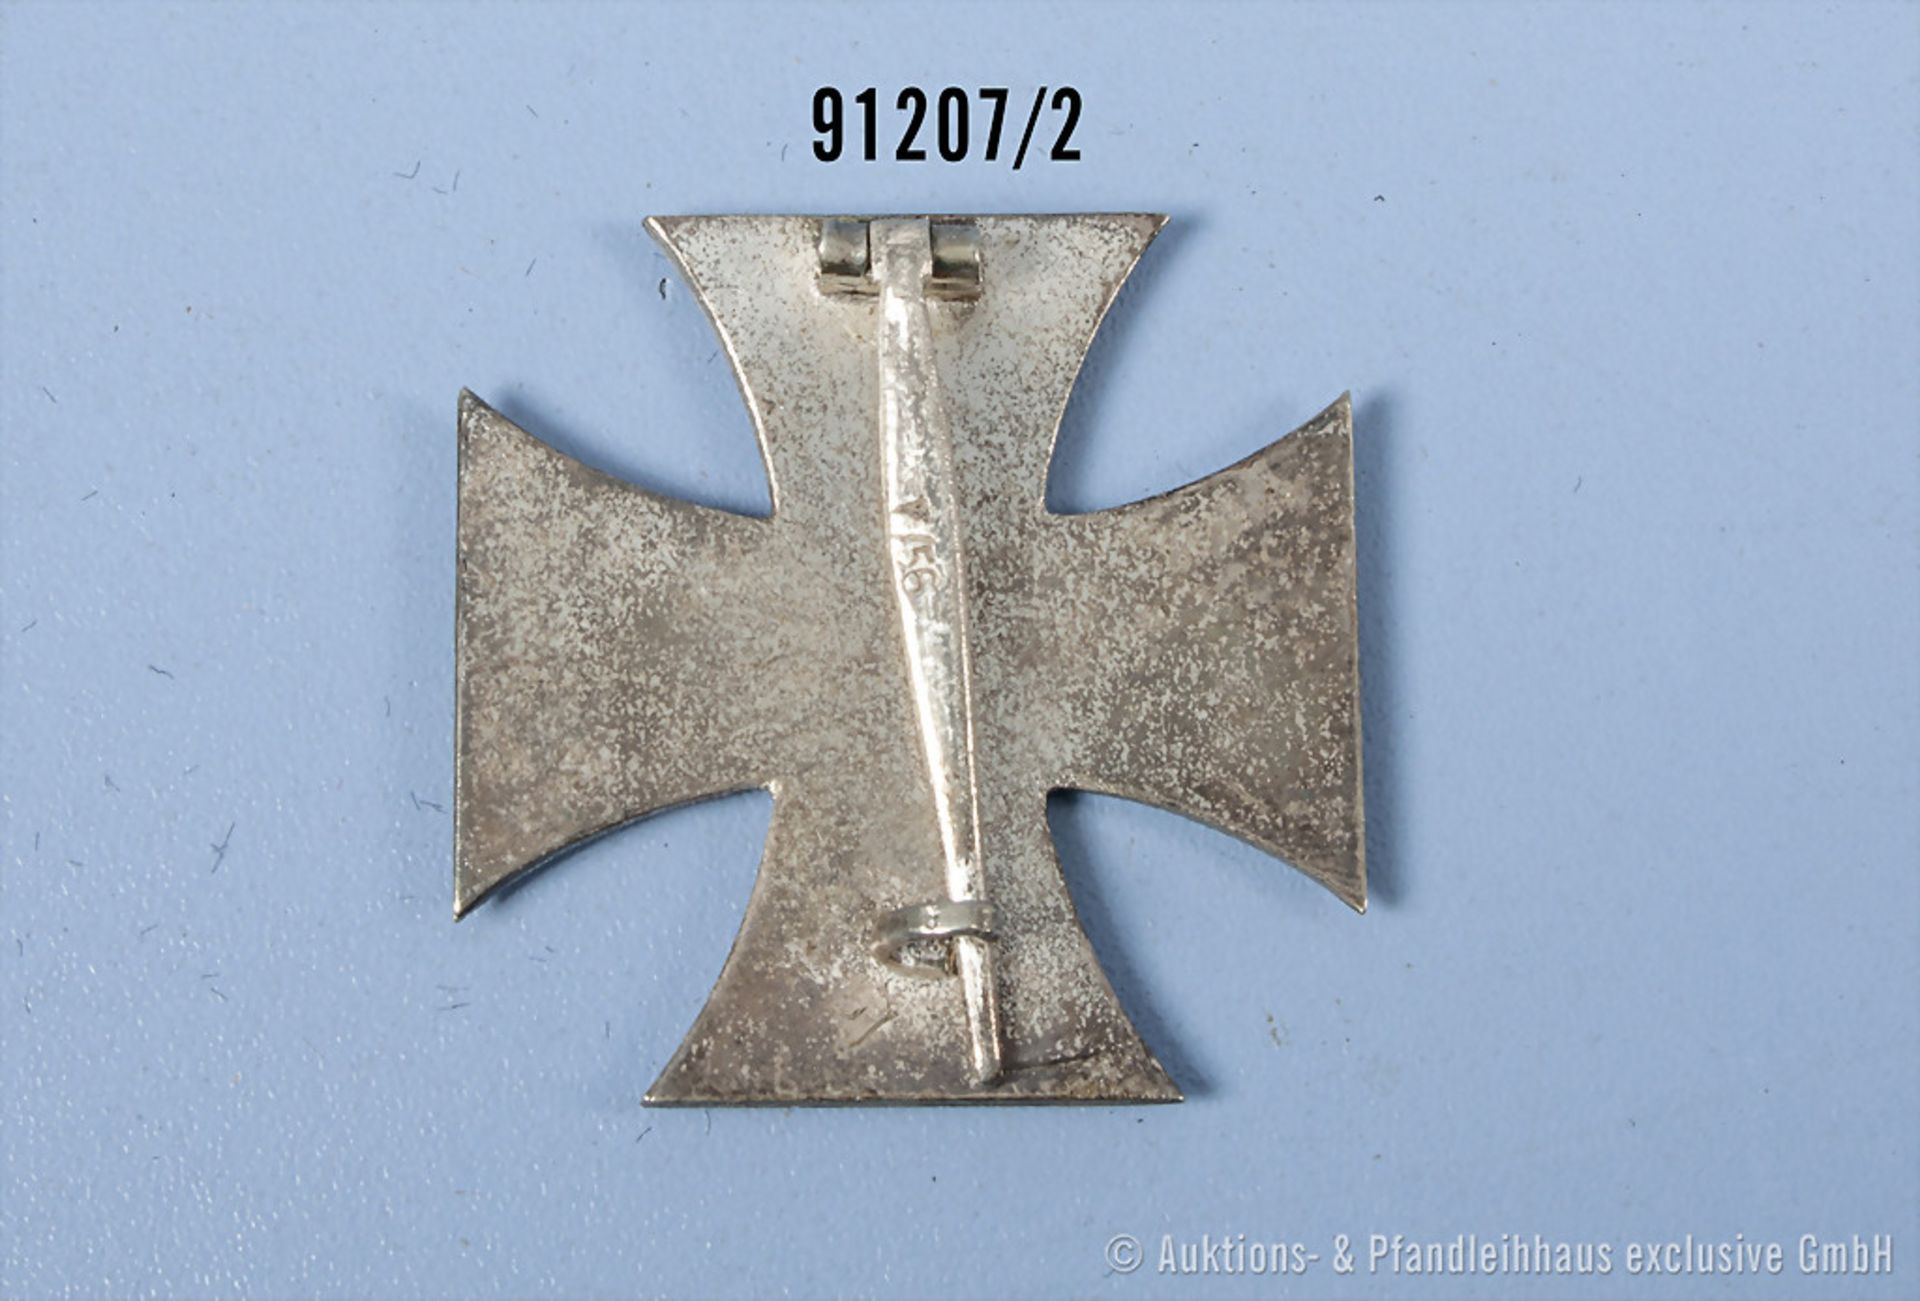 EK 1 1939, Hersteller "L 56" auf der Nadel, guter Zustand mit ... - Bild 2 aus 2